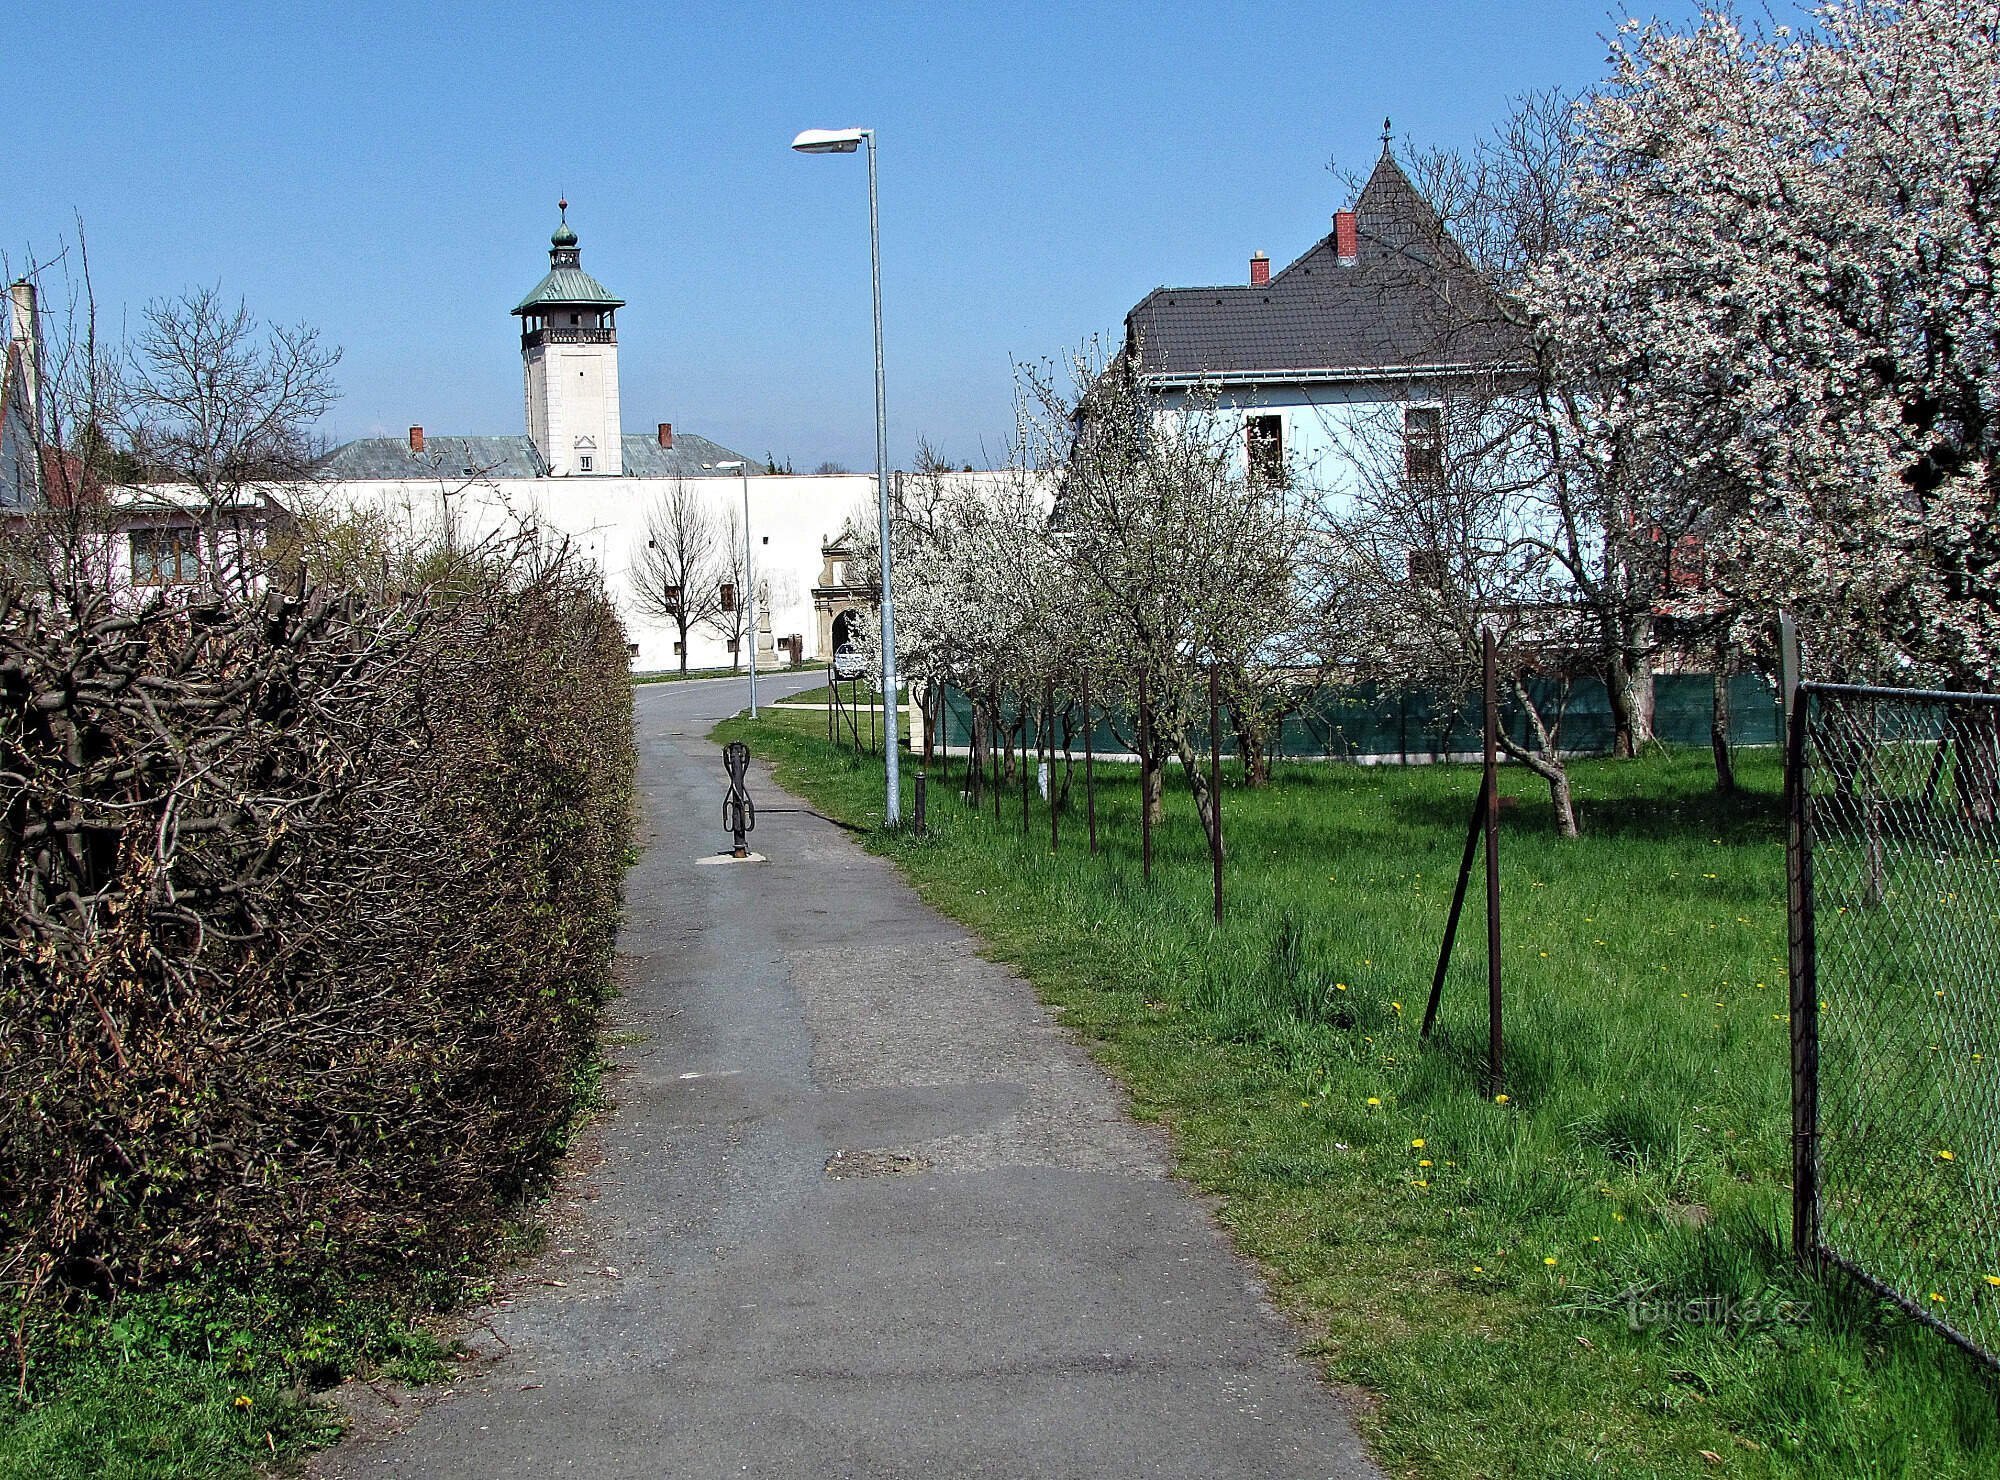 Drevohostice - khuôn viên của lâu đài